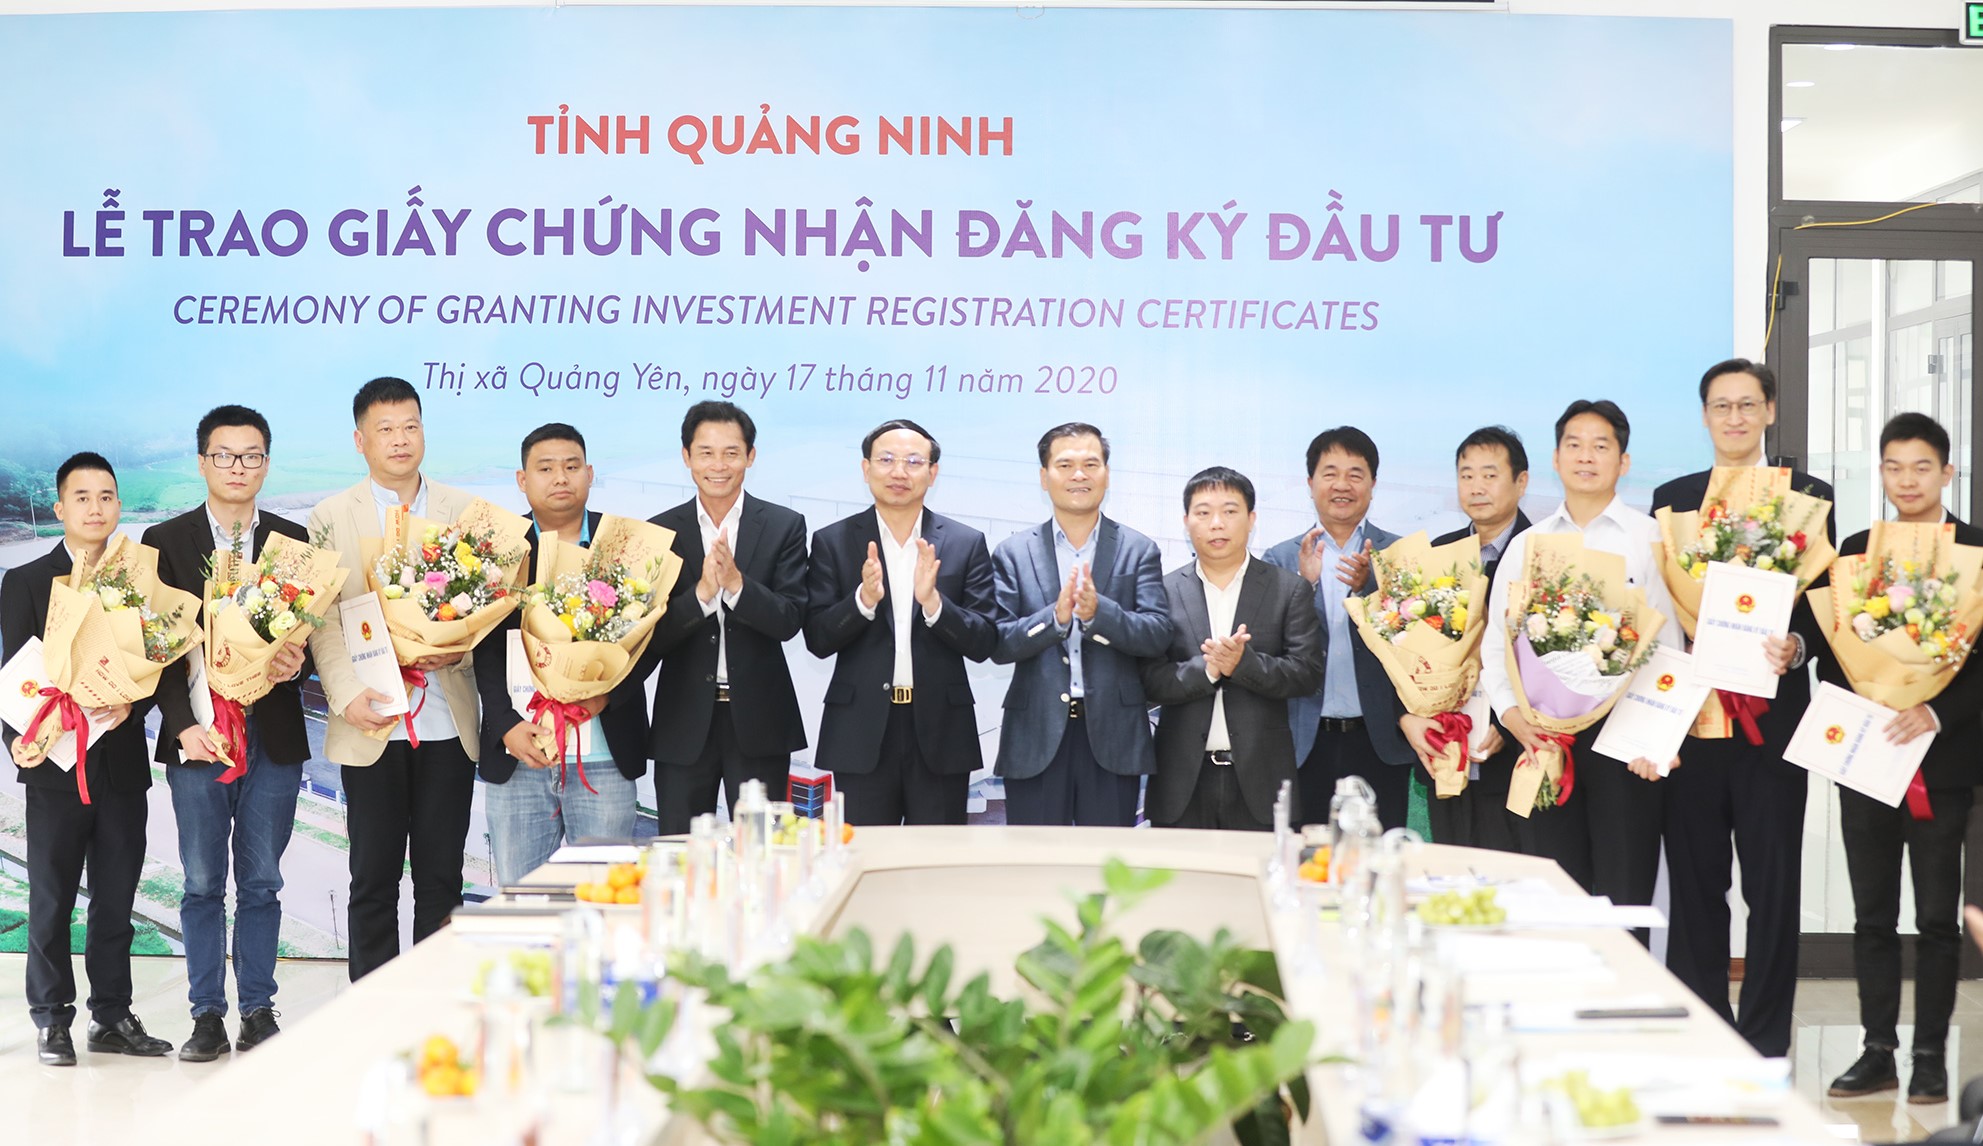 Tỉnh Quảng Ninh: Trao giấy chứng nhận đăng ký đầu tư cho 9 dự án tại các khu công nghiệp của Viglacera